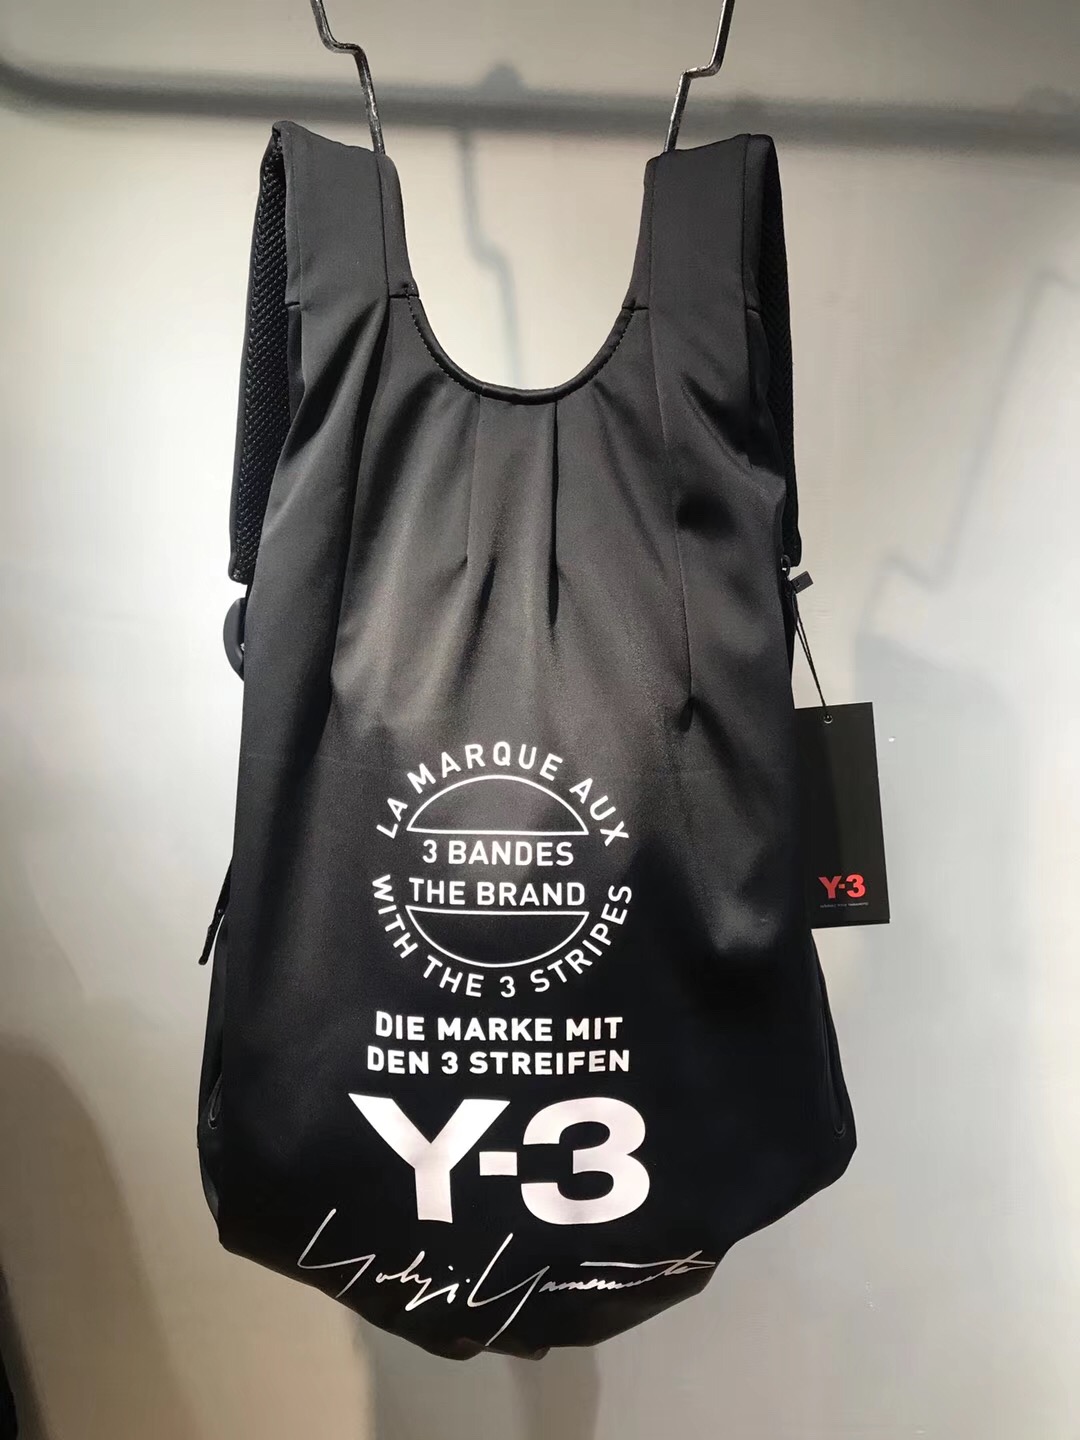 Y3尼龙软把双肩背包暗黑款时尚潮流百搭轻便跑步健身包Y3包双肩包-封面